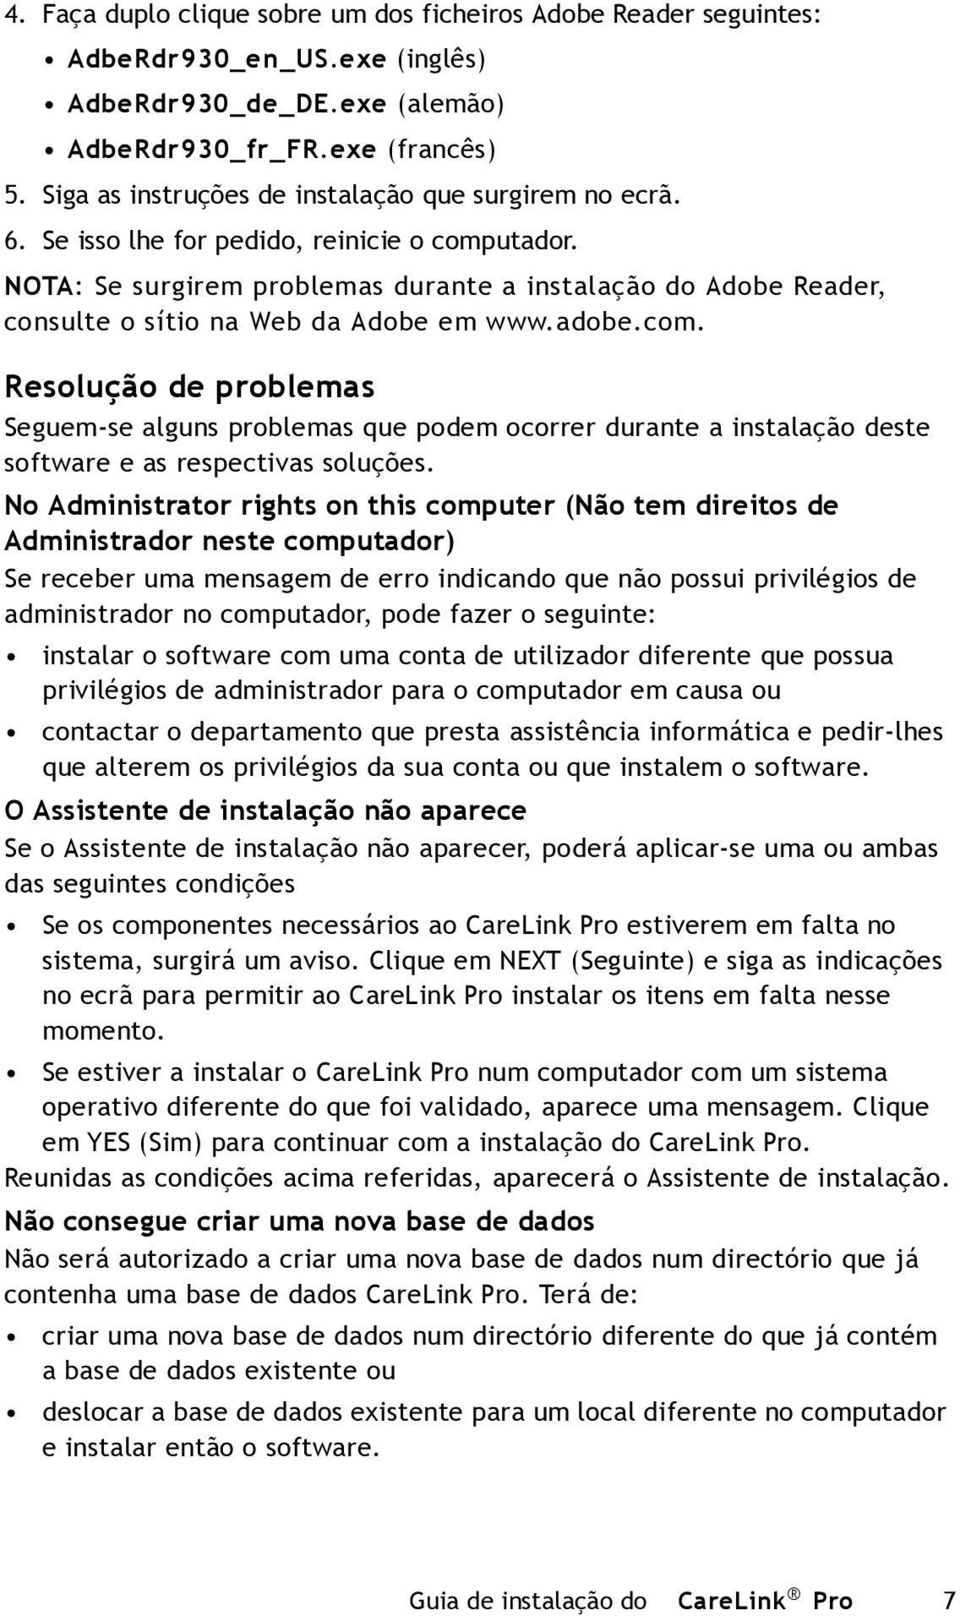 NOTA: Se surgirem problemas durante a instalação do Adobe Reader, consulte o sítio na Web da Adobe em www.adobe.com.